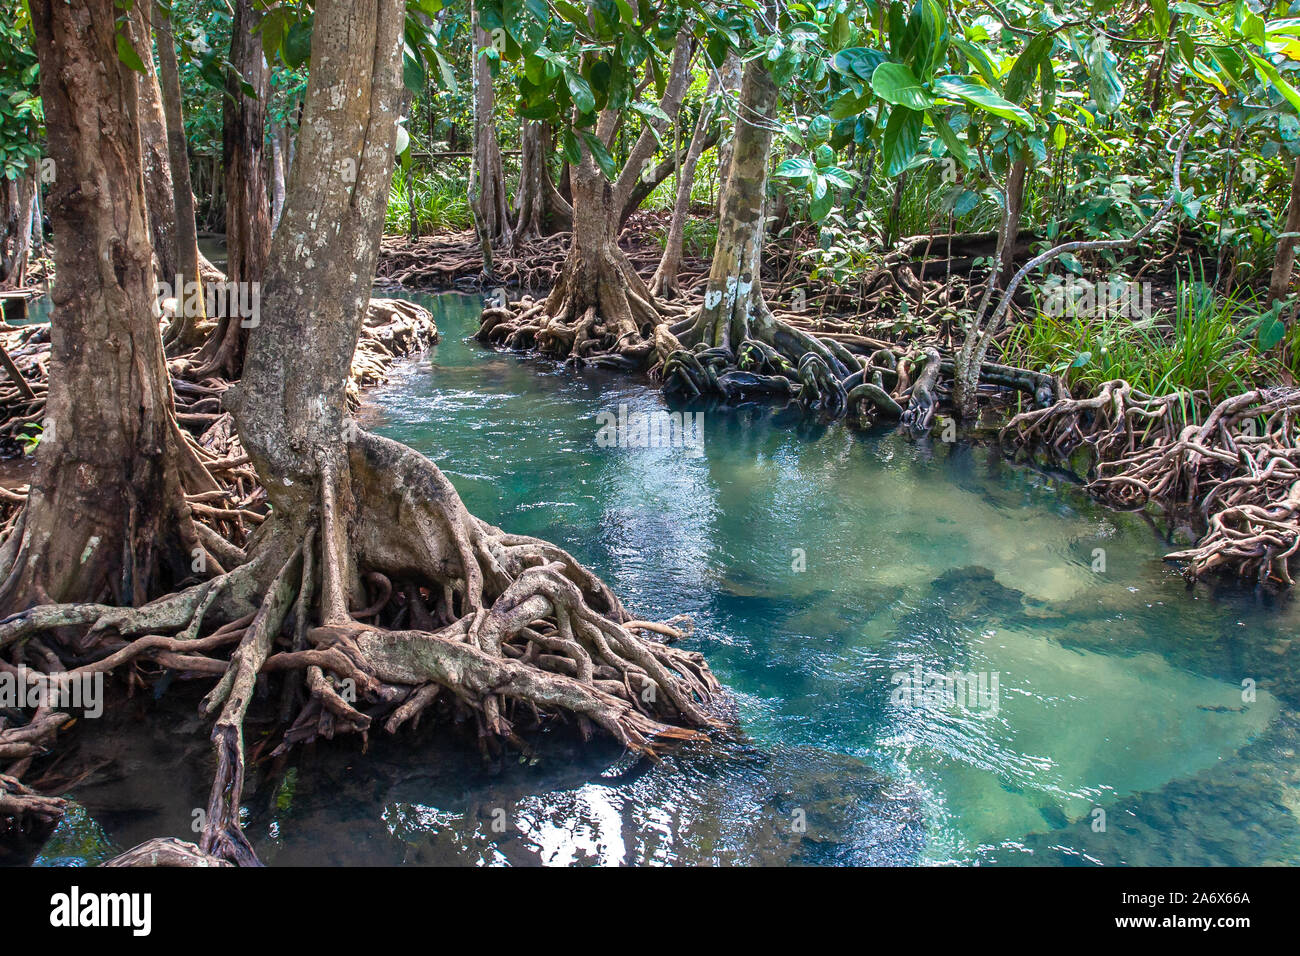 Ein kleiner Fluss fließt durch einen Mangrovenwald mit dicken Bäume mit twisted Wurzeln. Das Wasser ist Grün und Klar. Um den asiatischen Dschungel. Stockfoto